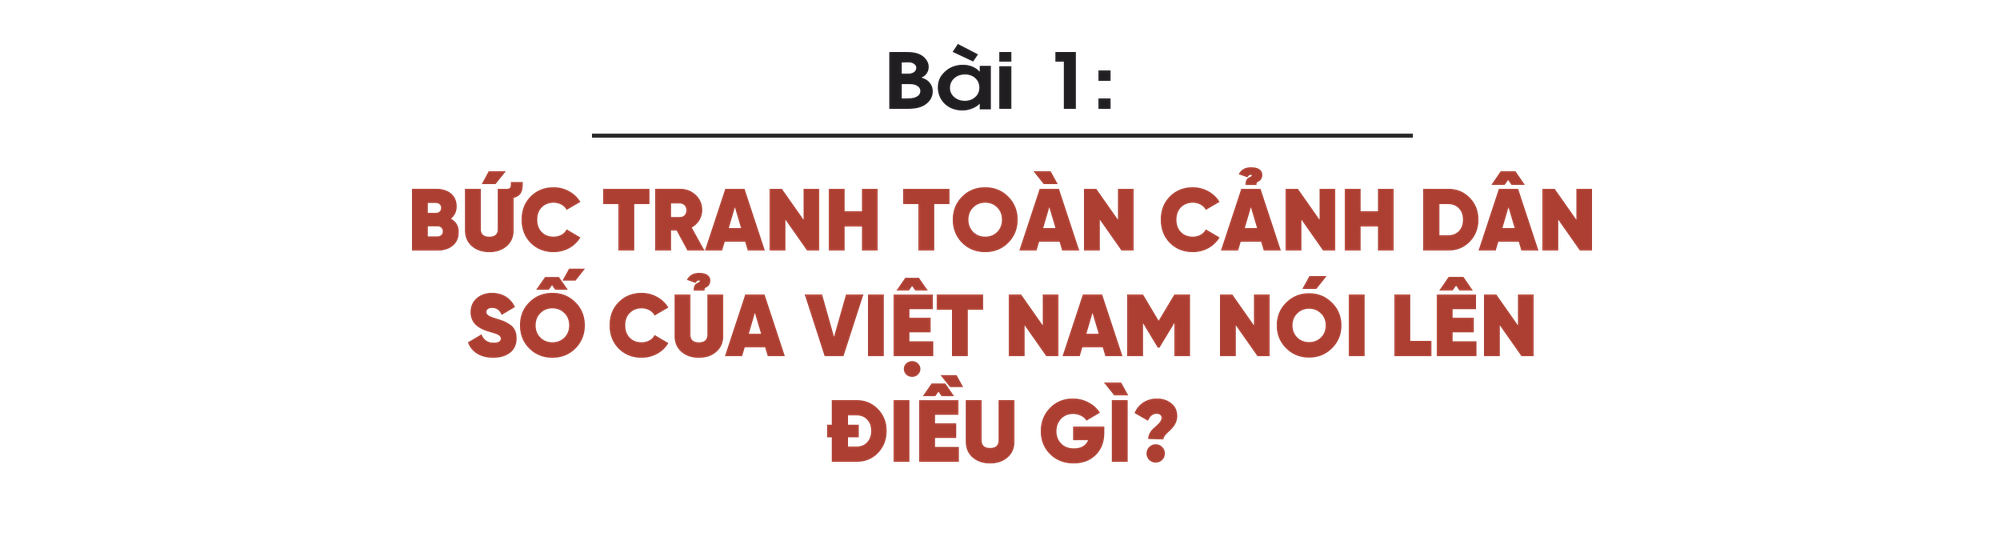 Bức tranh toàn cảnh dân số của Việt Nam nói lên điều gì? - Ảnh 1.